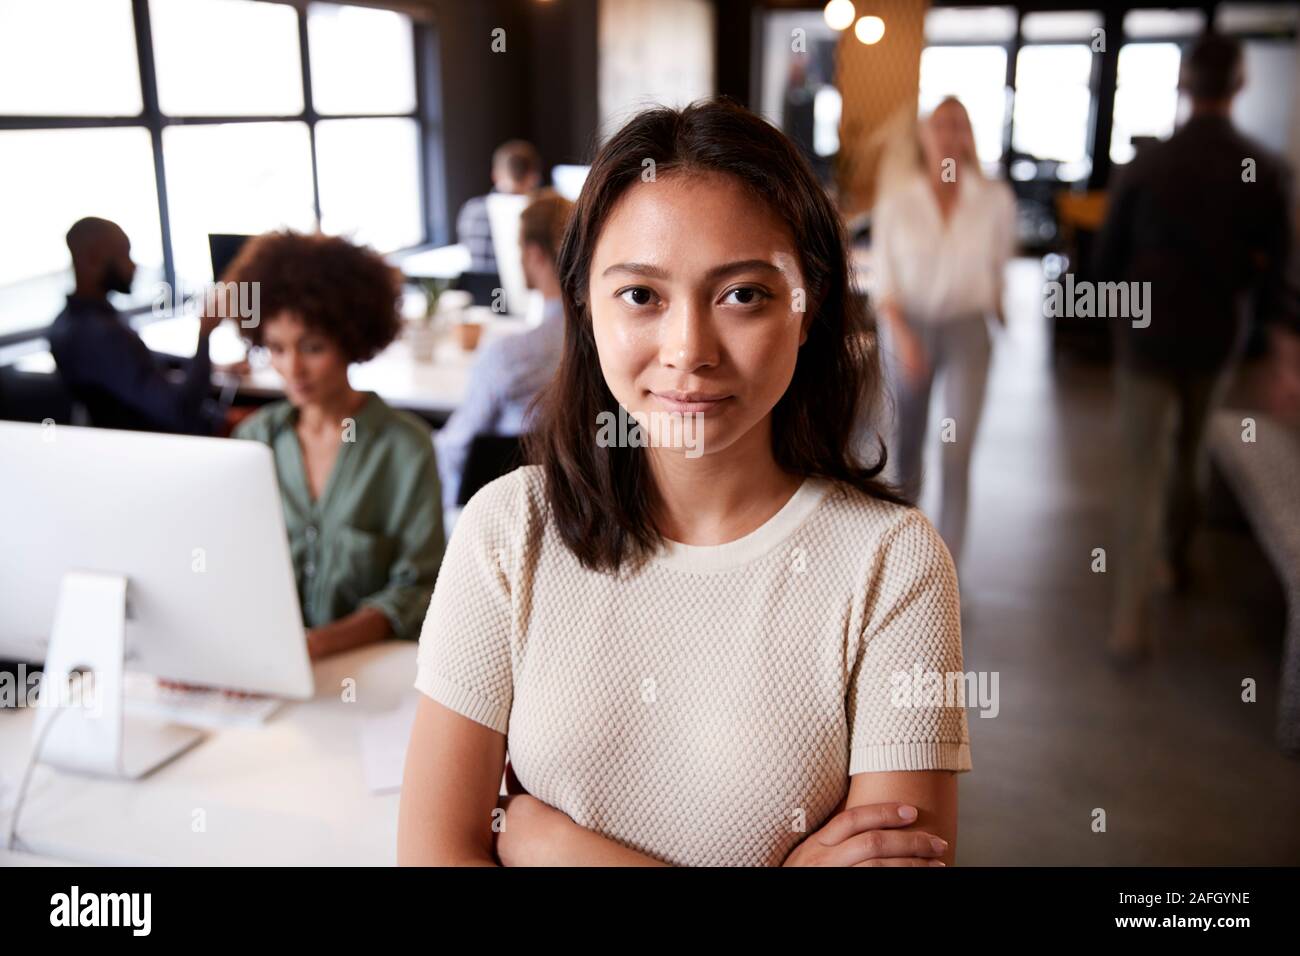 Femme Asiatique millénaire creative debout dans un bureau temporaire occupé, souriant à l'appareil photo Banque D'Images